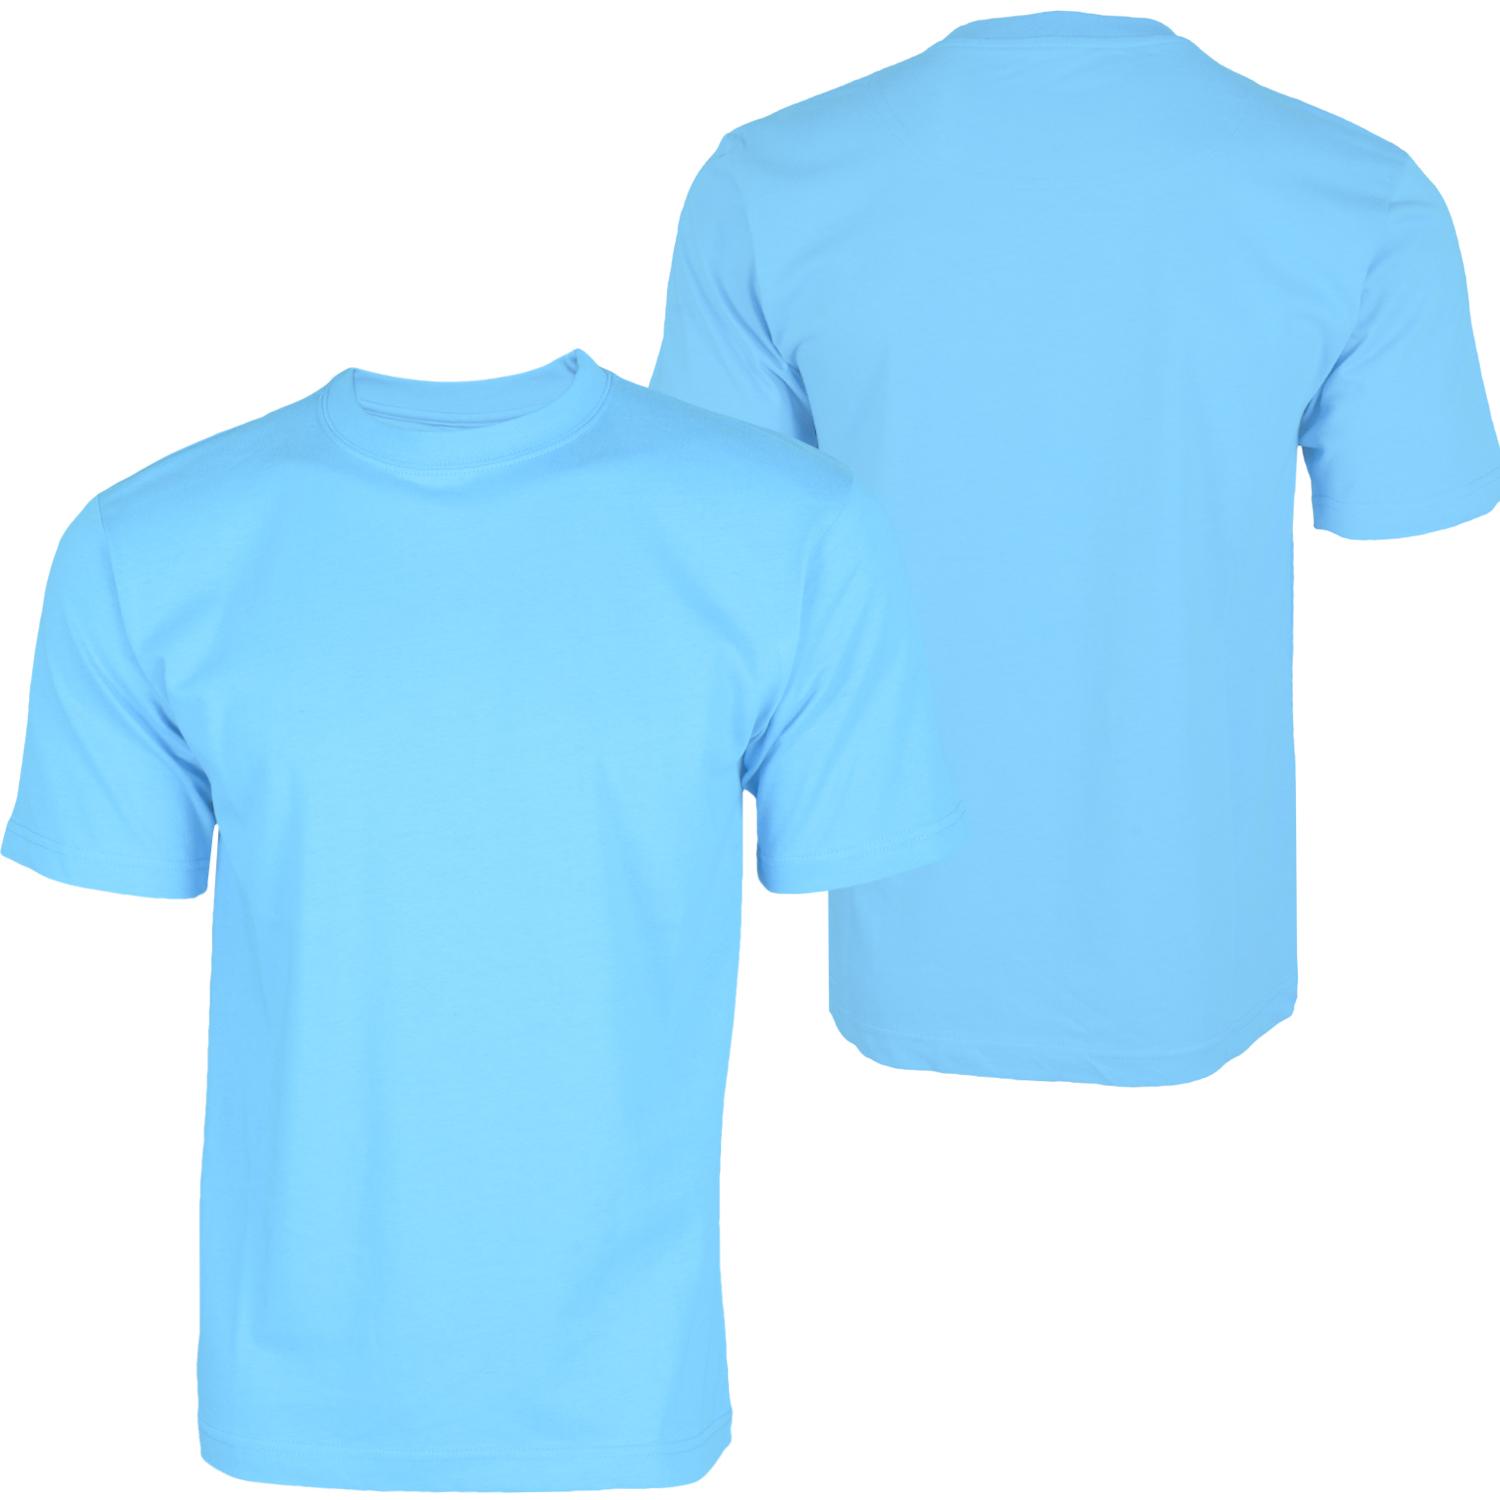 Foto Hoodboyz Basic Blank Camisetas Altas Azul Claro